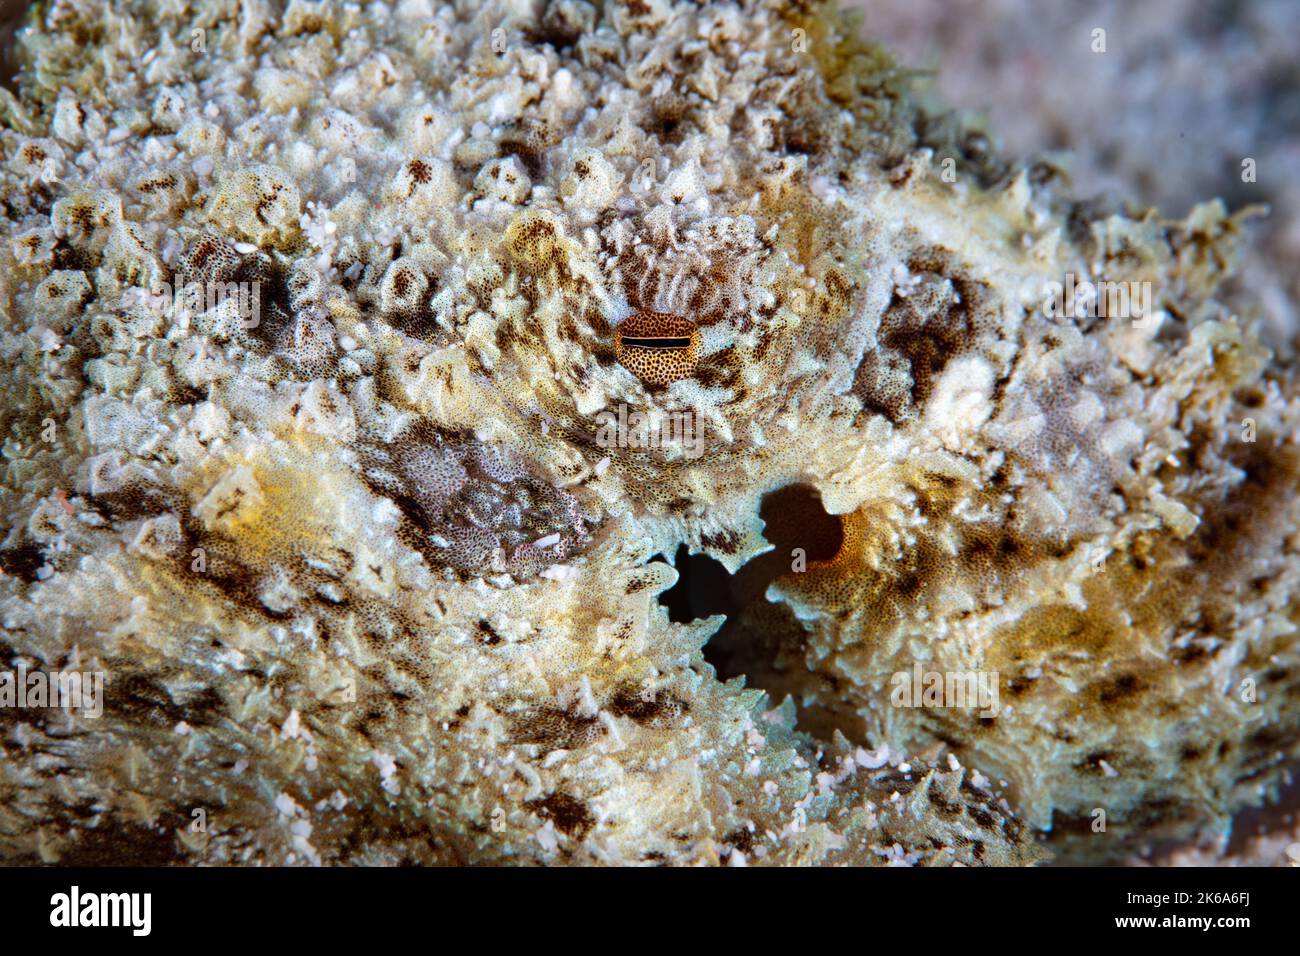 Ein kleiner, gut getarnter Oktopus, Amphiocrake mototi, versteckt sich am Meeresboden in der Nähe von Flores, Indonesien. Diese seltene, indopazifische Art ist giftig. Stockfoto